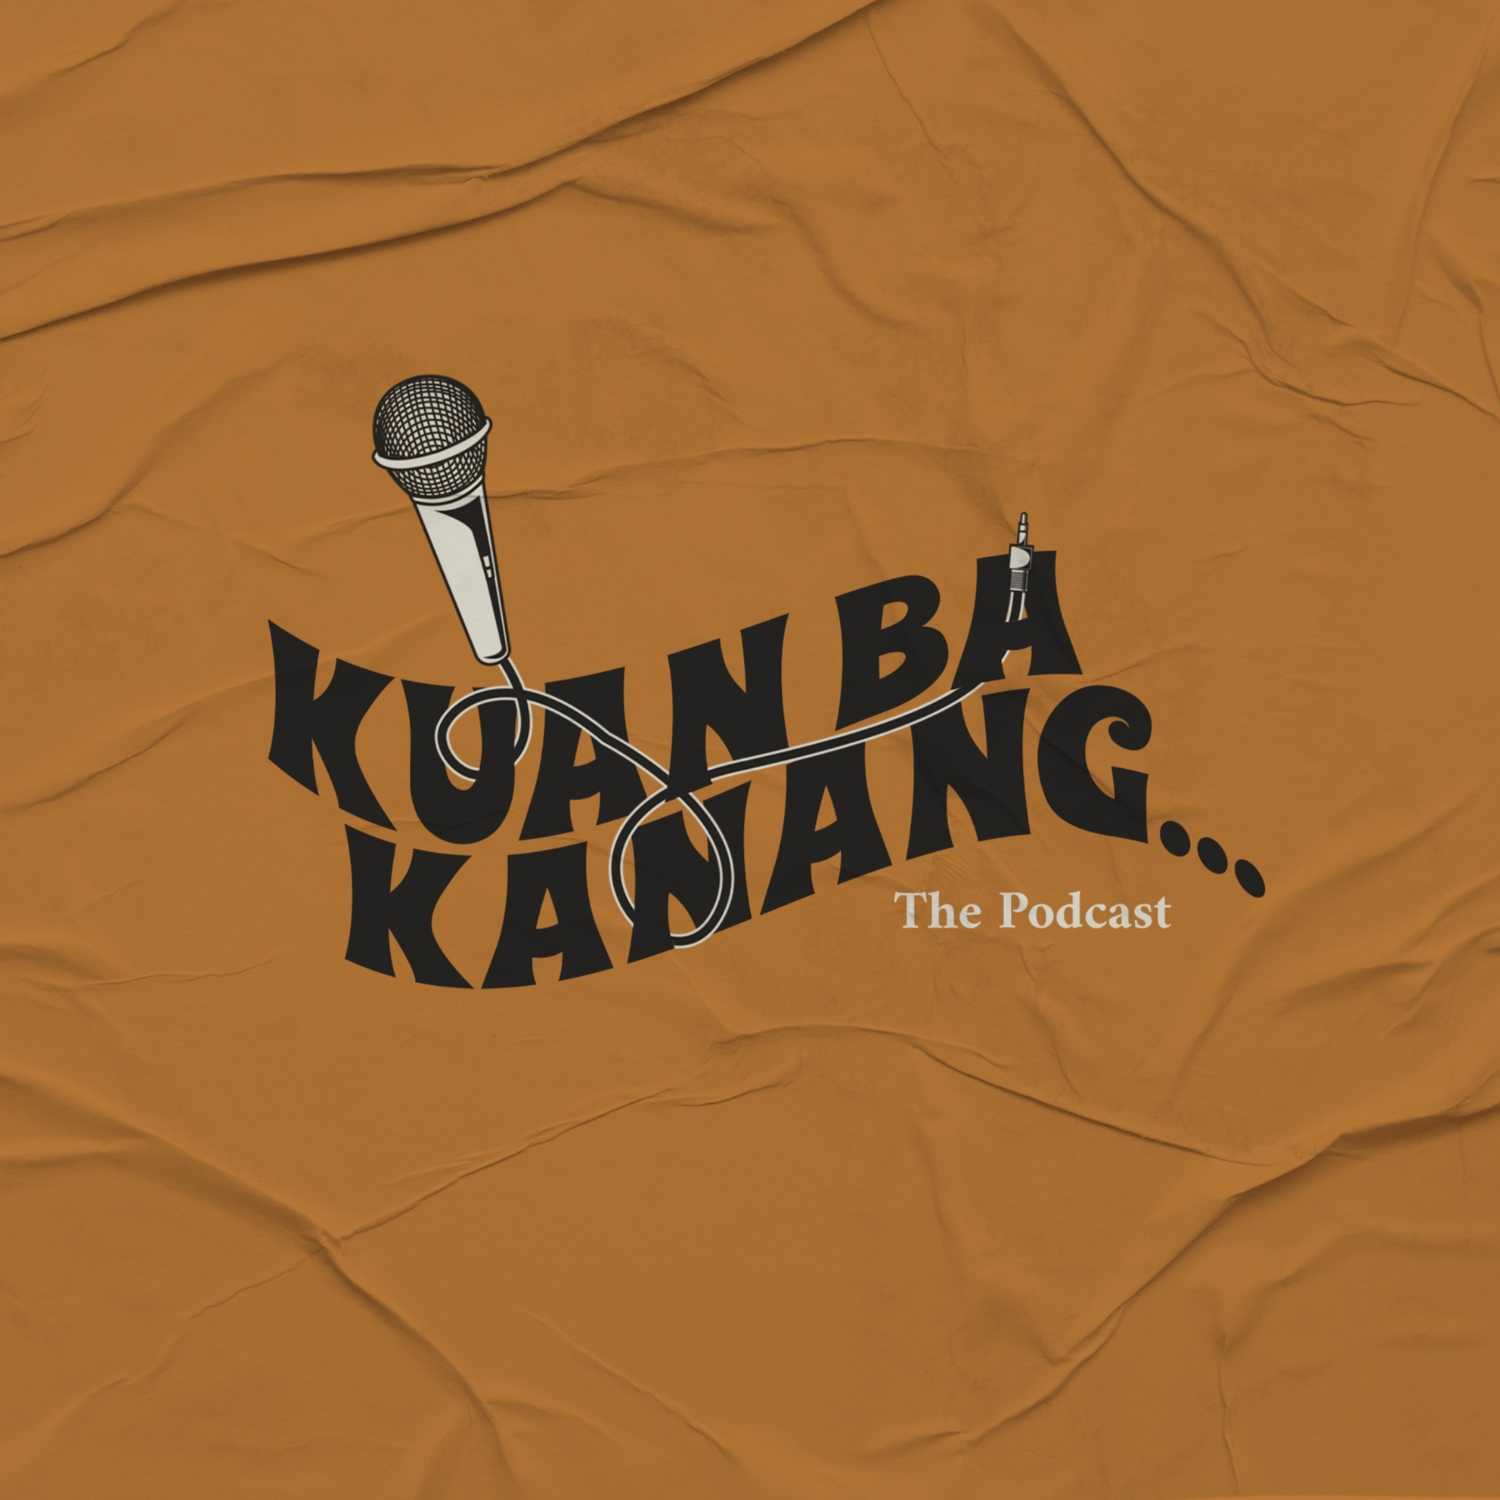 Kuan Ba Kanang - The Podcast